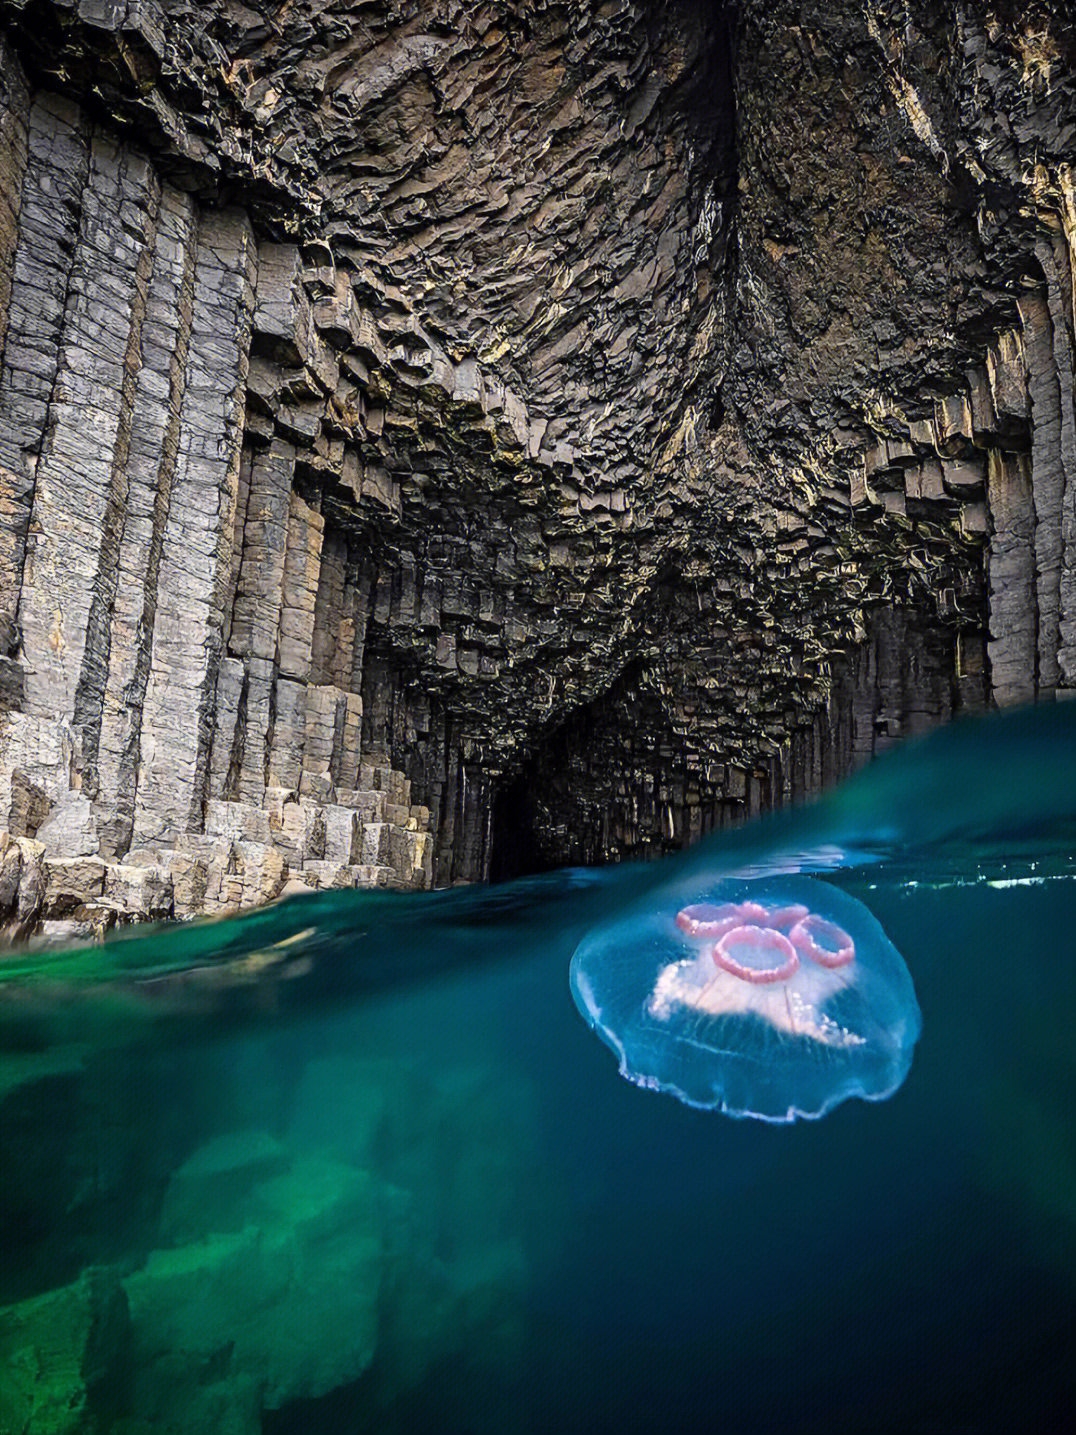 苏格兰🇬🇧探访芬戈尔洞穴 仿佛神秘岛